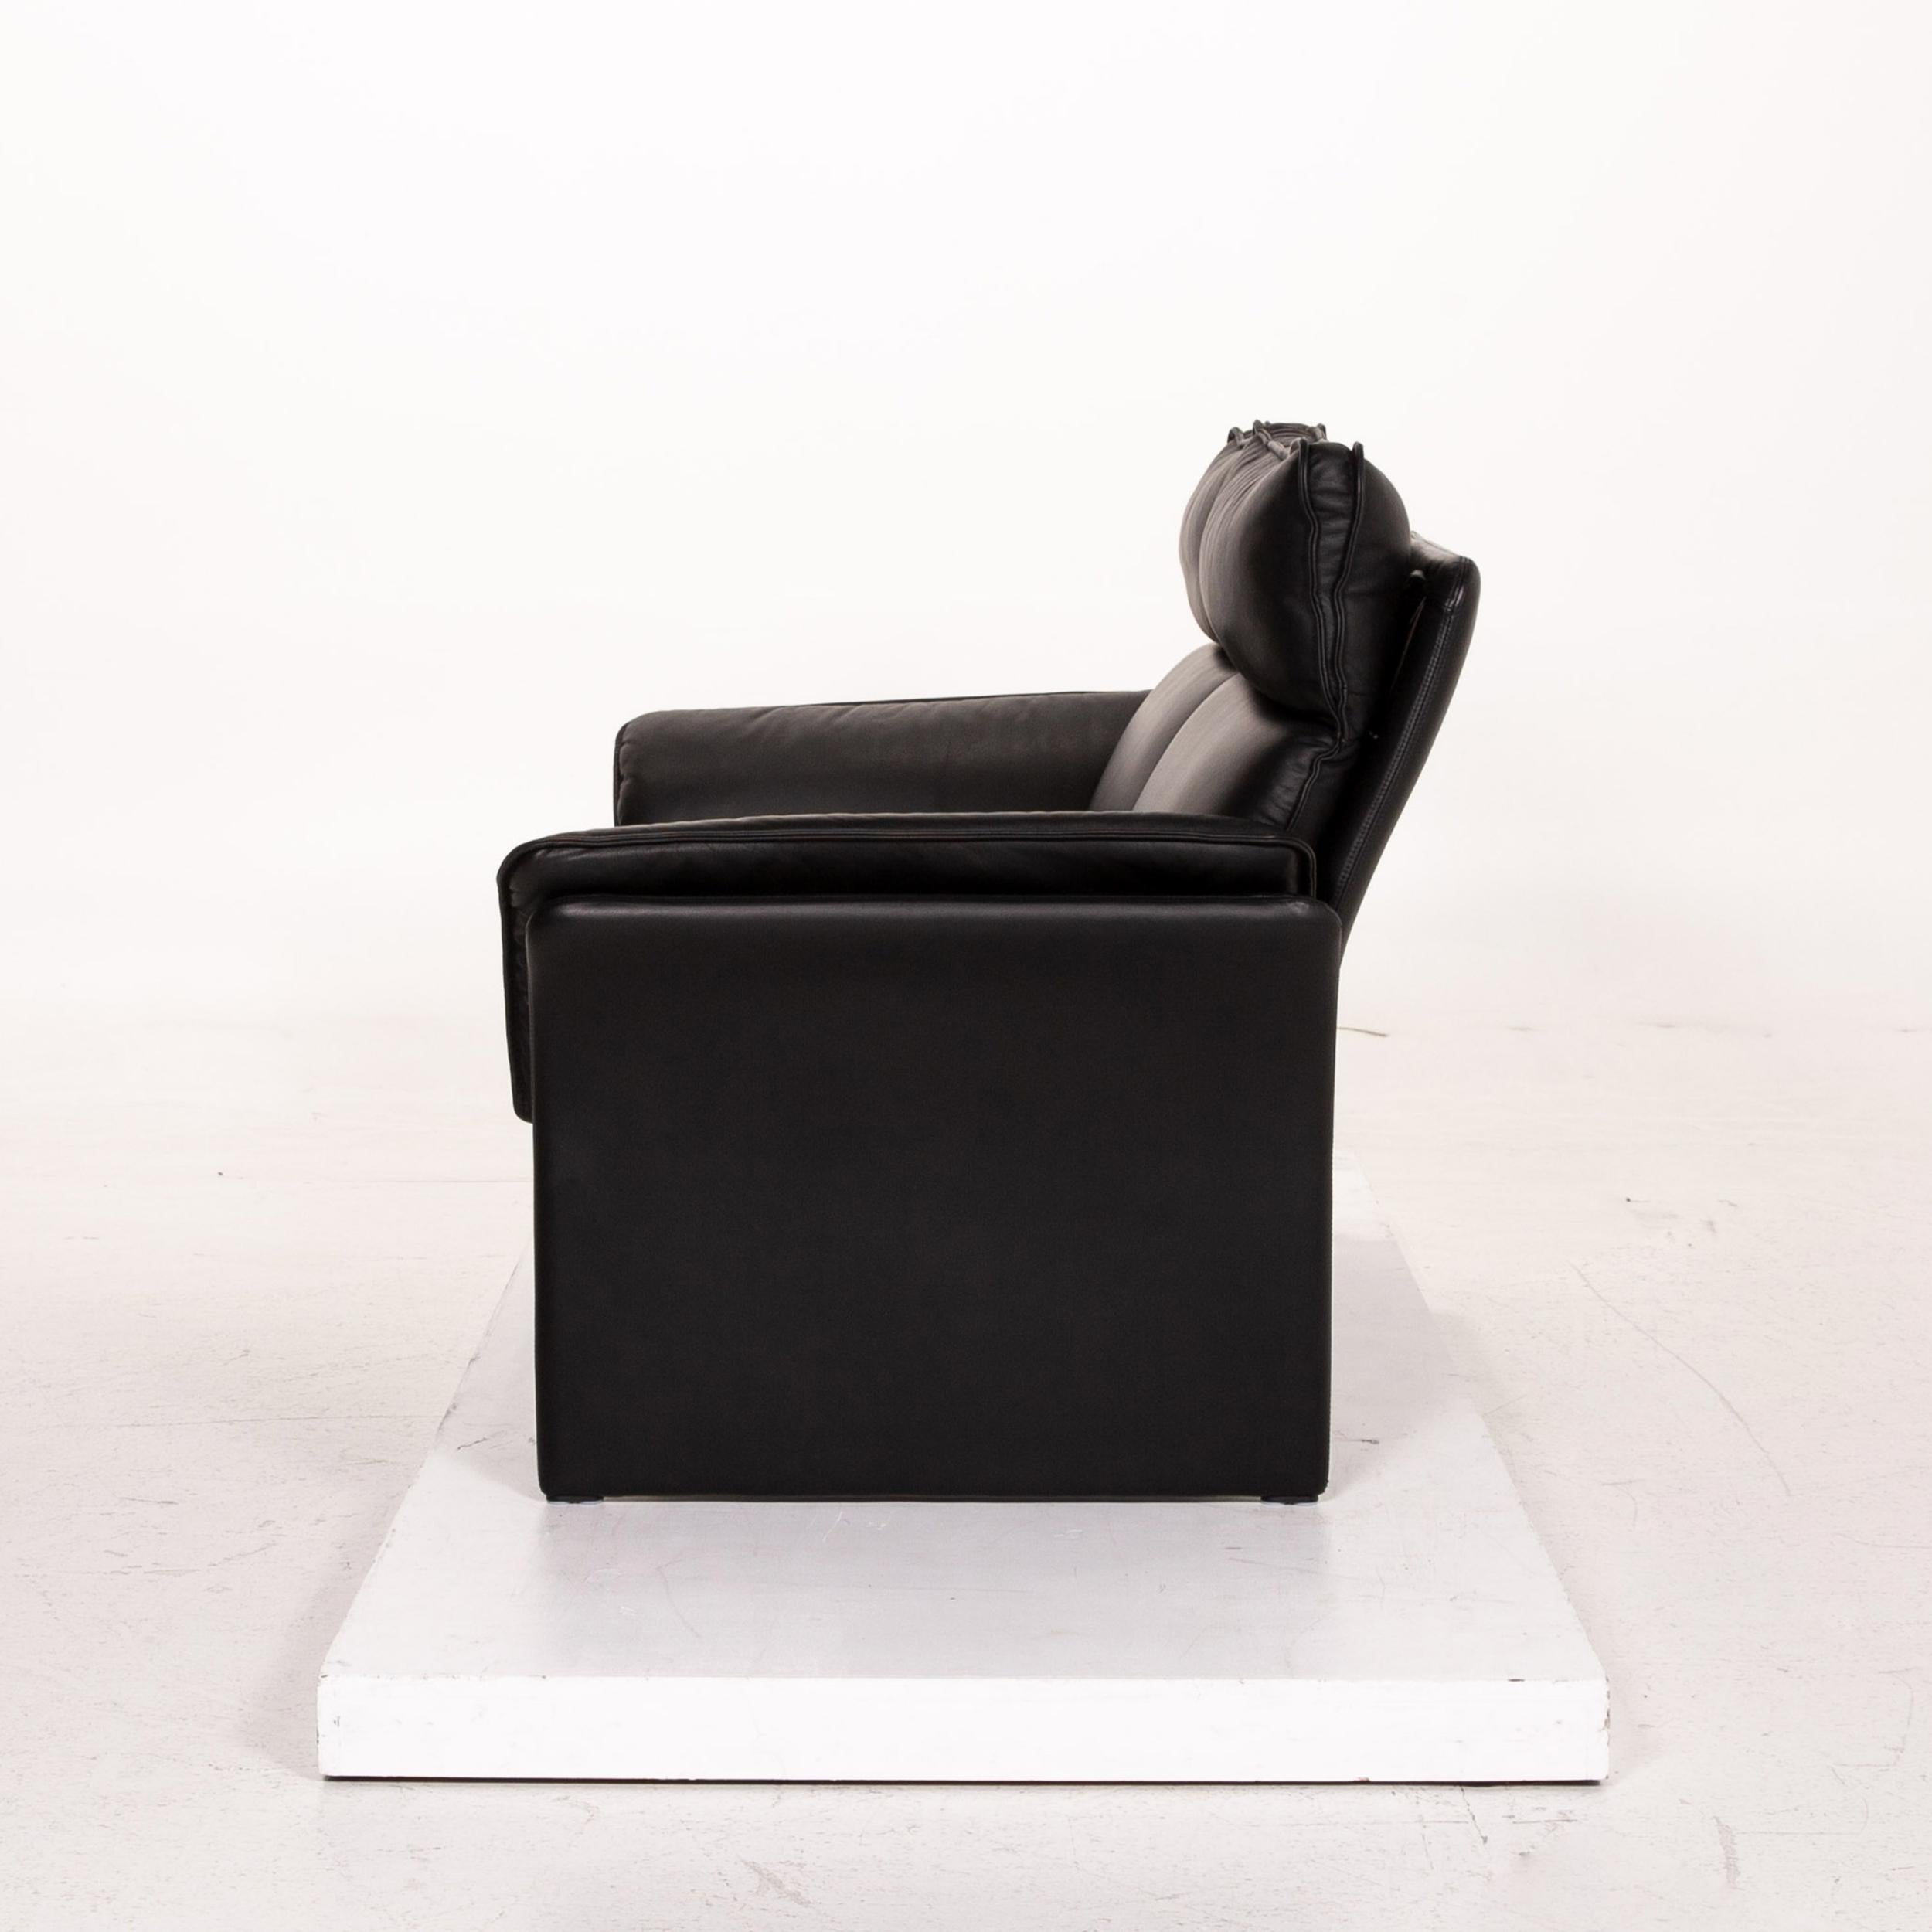 Three-Point Scala Leather Sofa Set Black 1 Three-Seat 1 Two-Seat 13